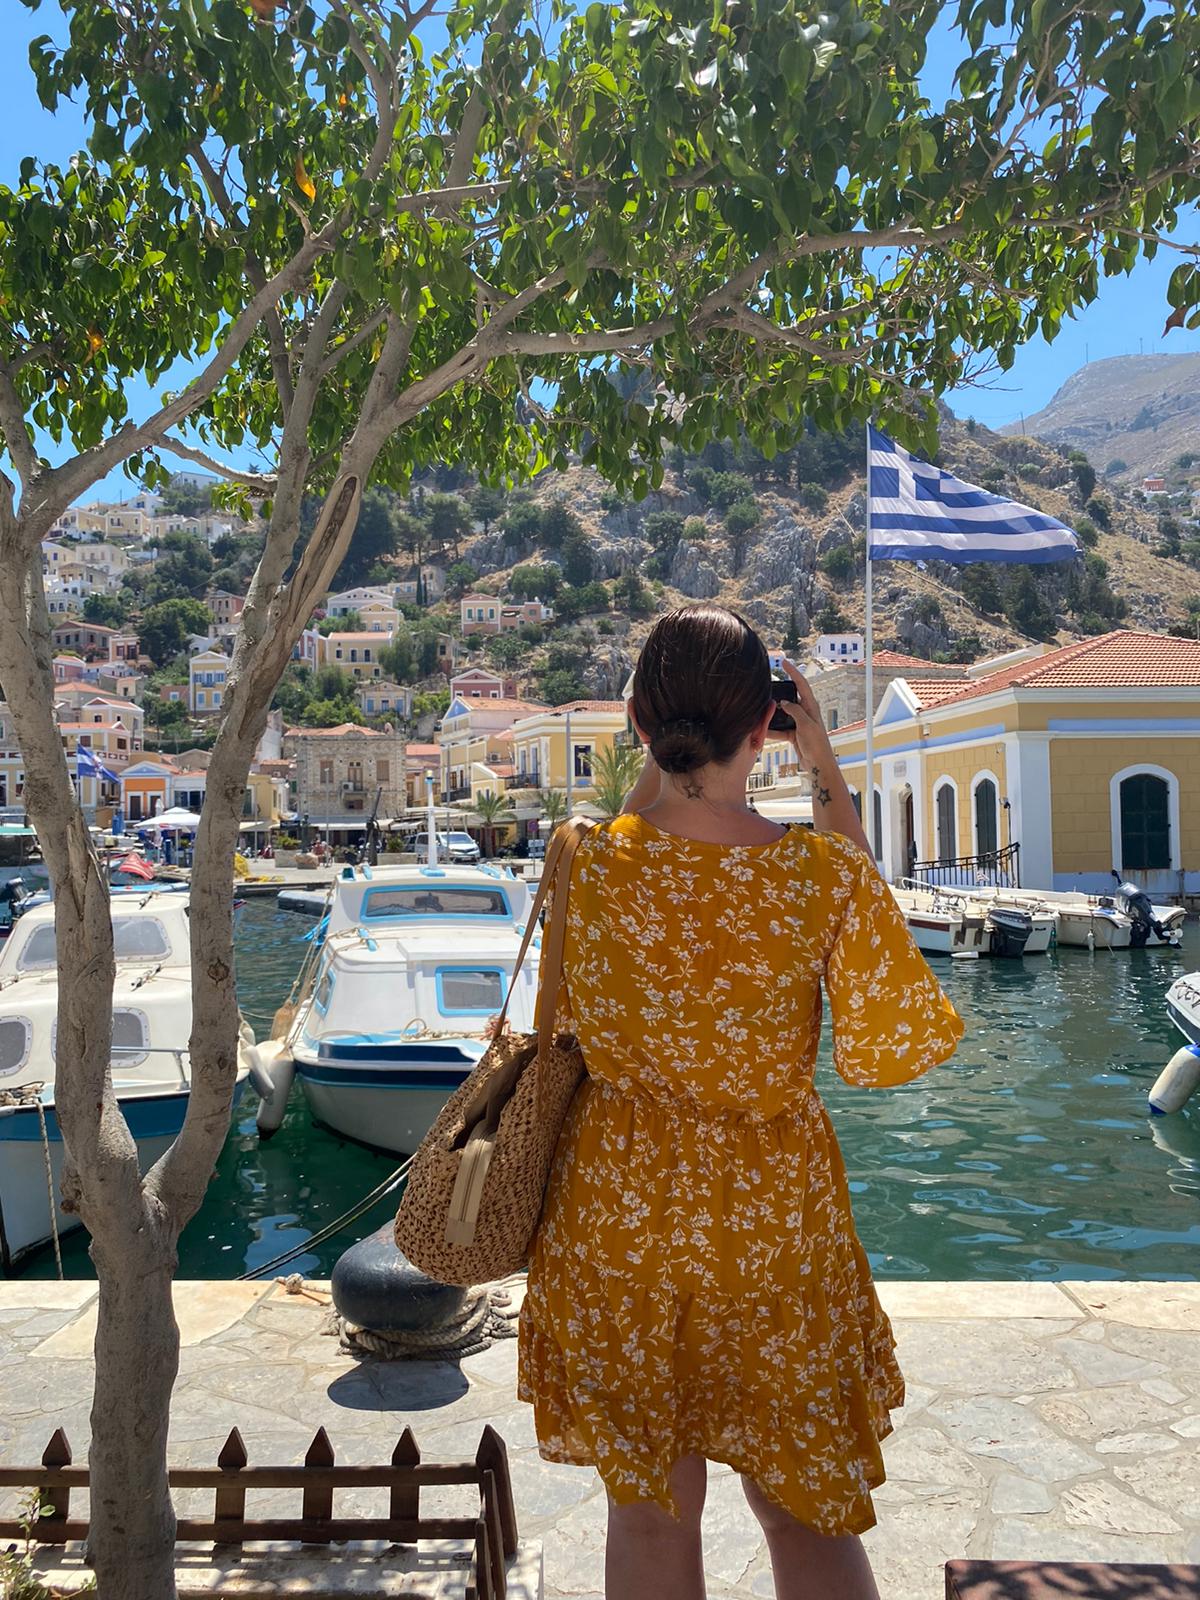 Reizen tijdens corona - Symi, Griekenland